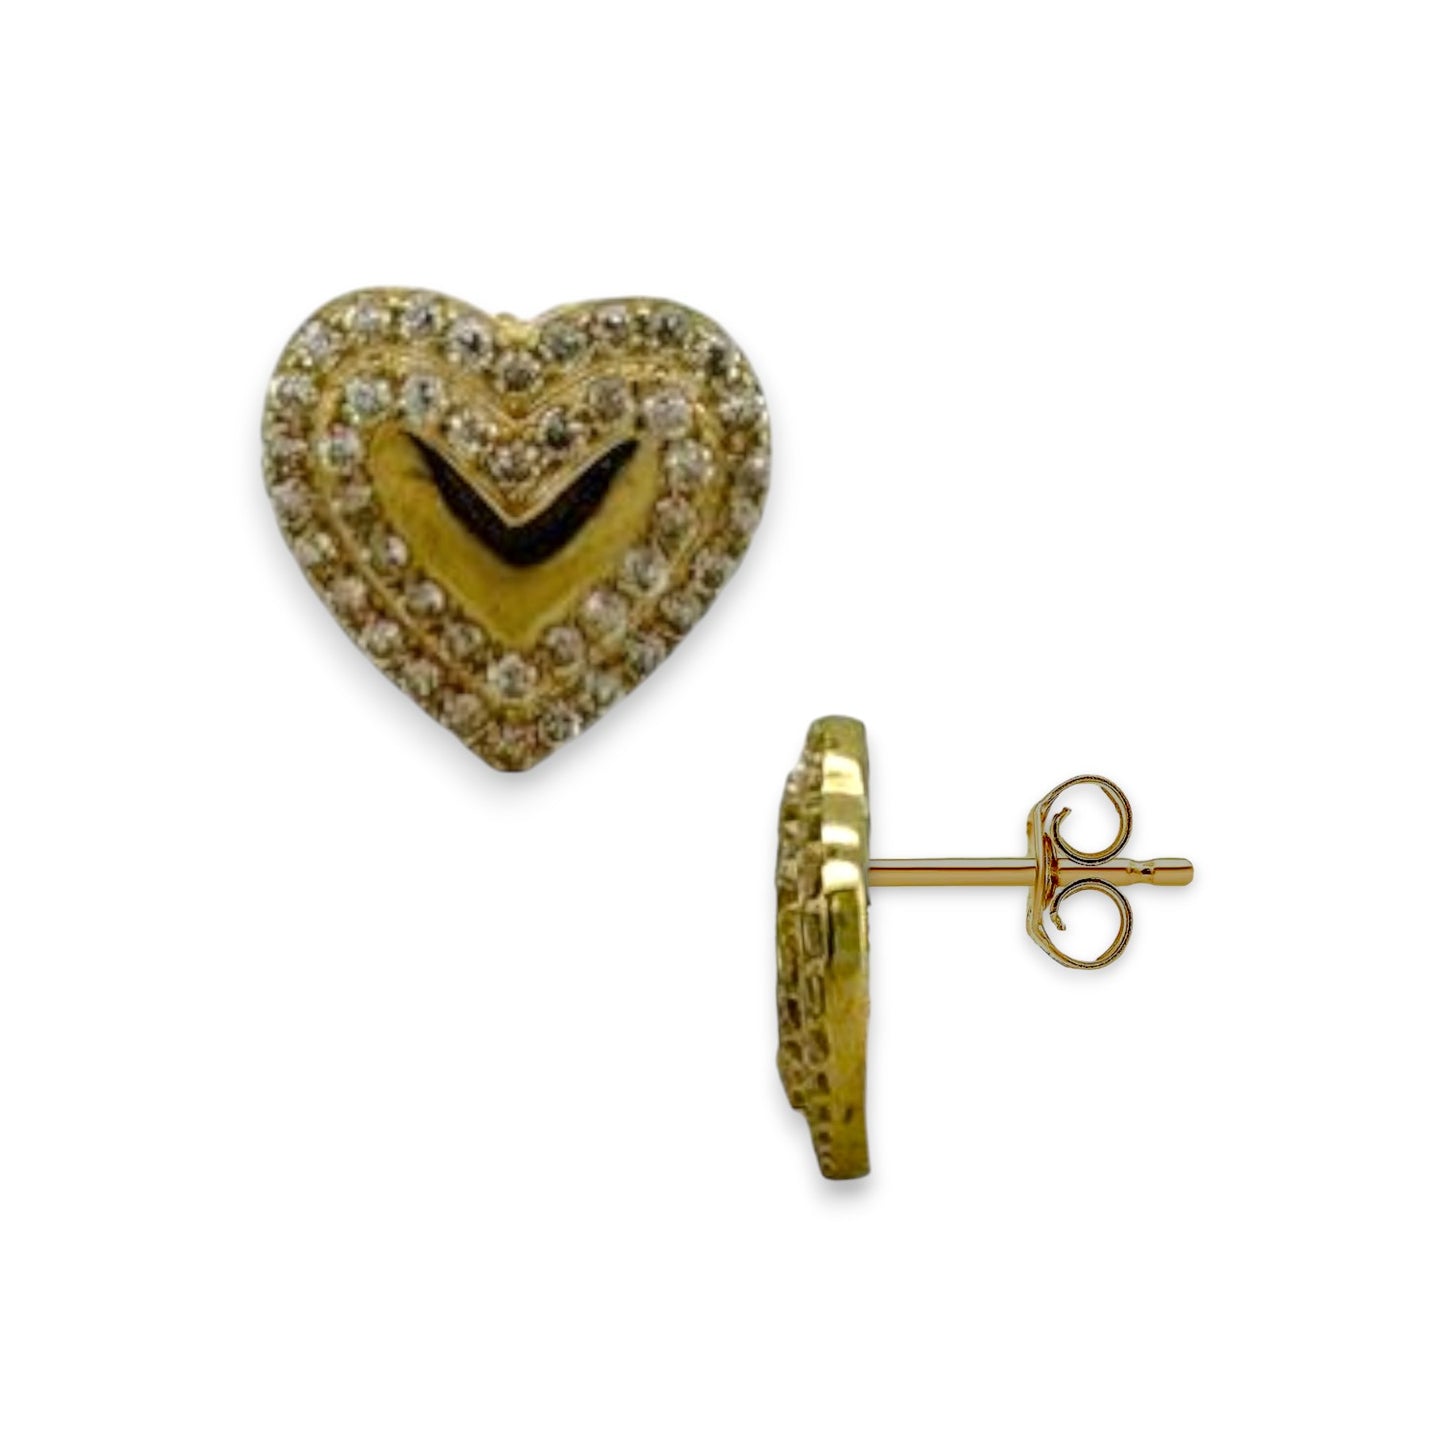 Heart ZC Earrings - 10K Yellow Gold